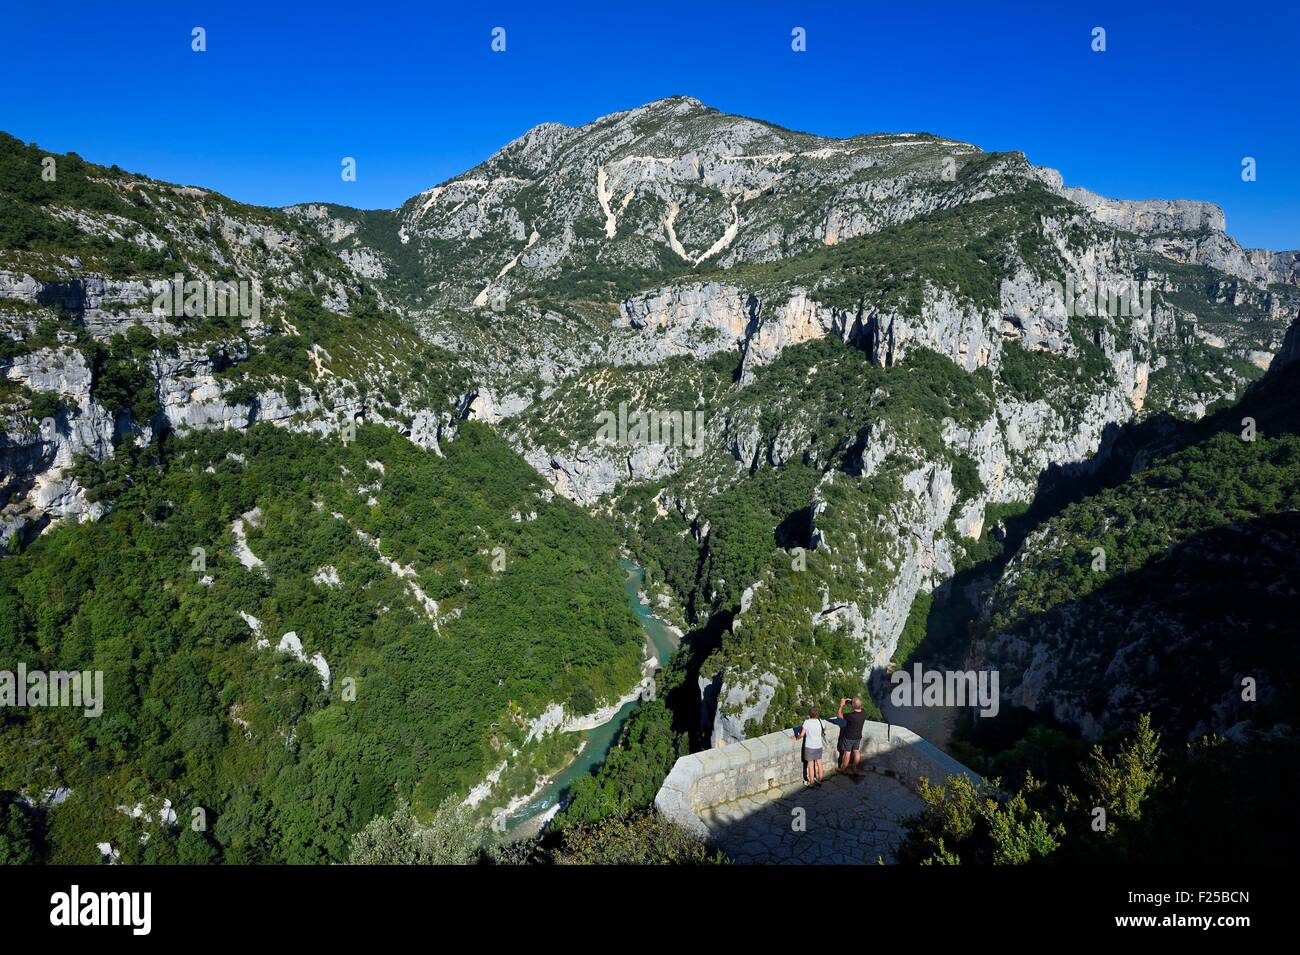 France, Alpes de Haute Provence, Parc Naturel Régional du Verdon, les gorges du Verdon, vue sur la rivière du Verdon et de la Brèche Imbert du belvédère de la balcon de la Mescla Banque D'Images